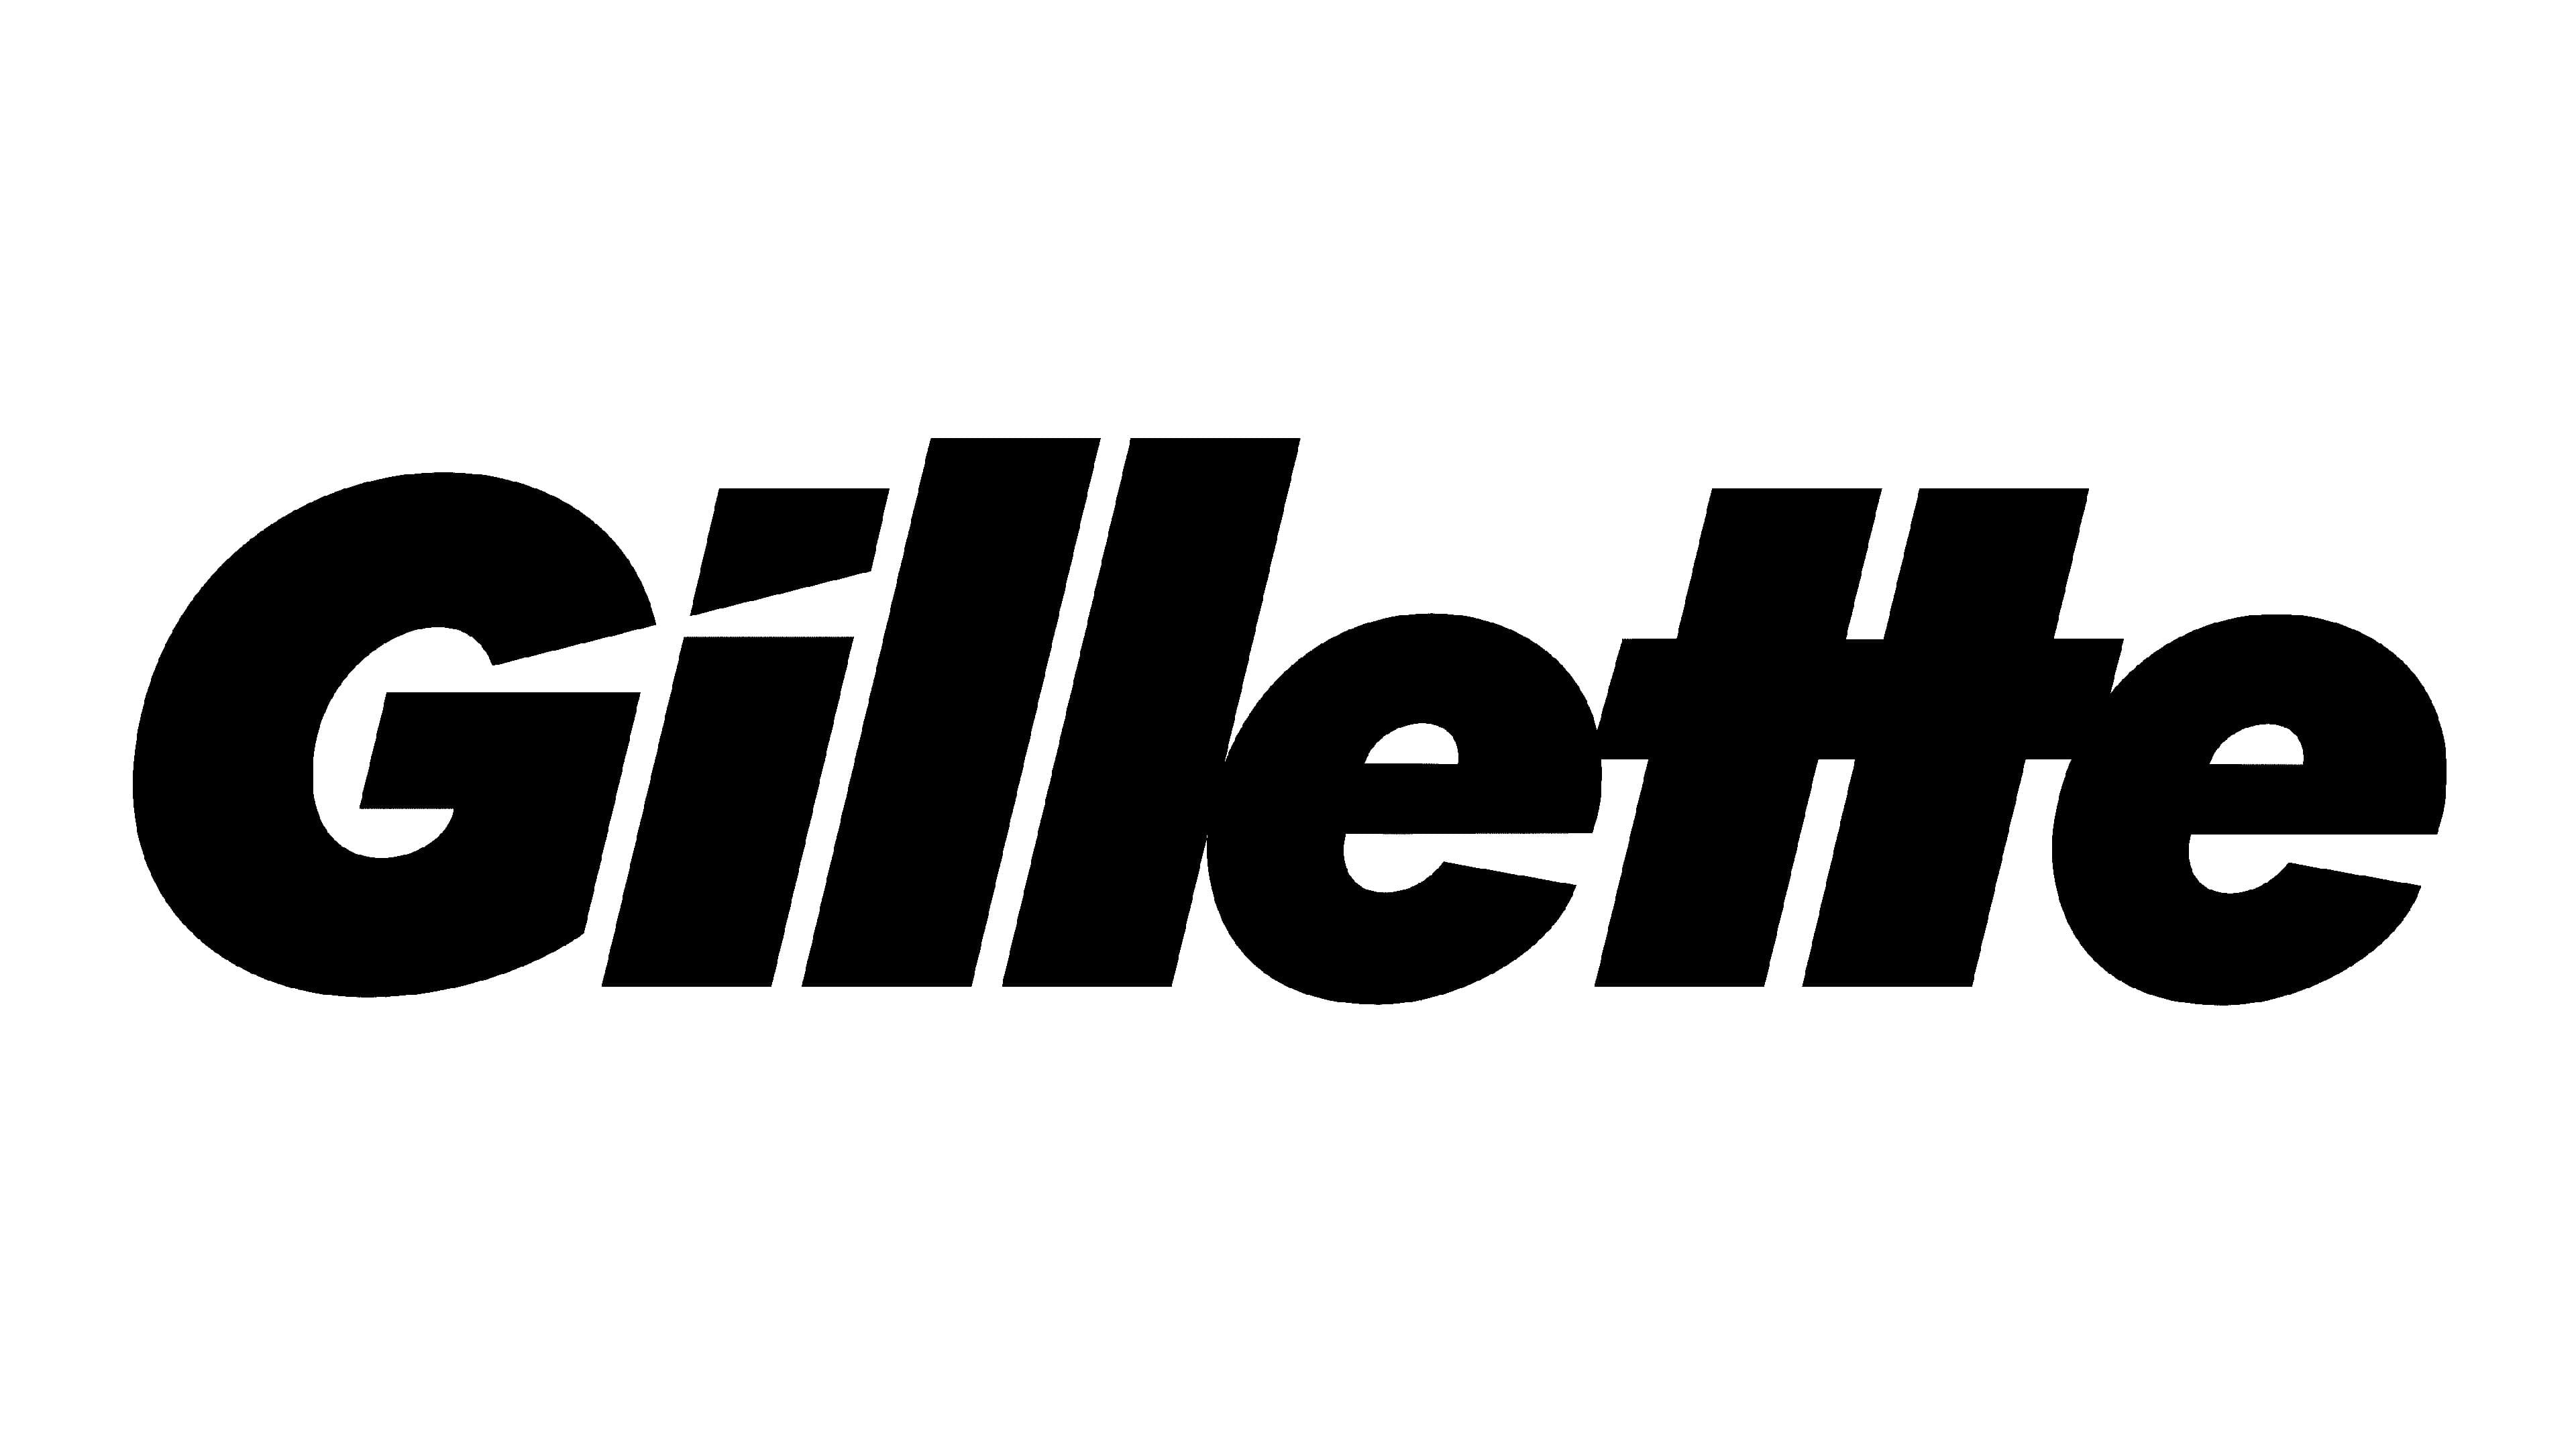 Mẫu thiết kế logo thương hiệu công ty GILLETTE 7